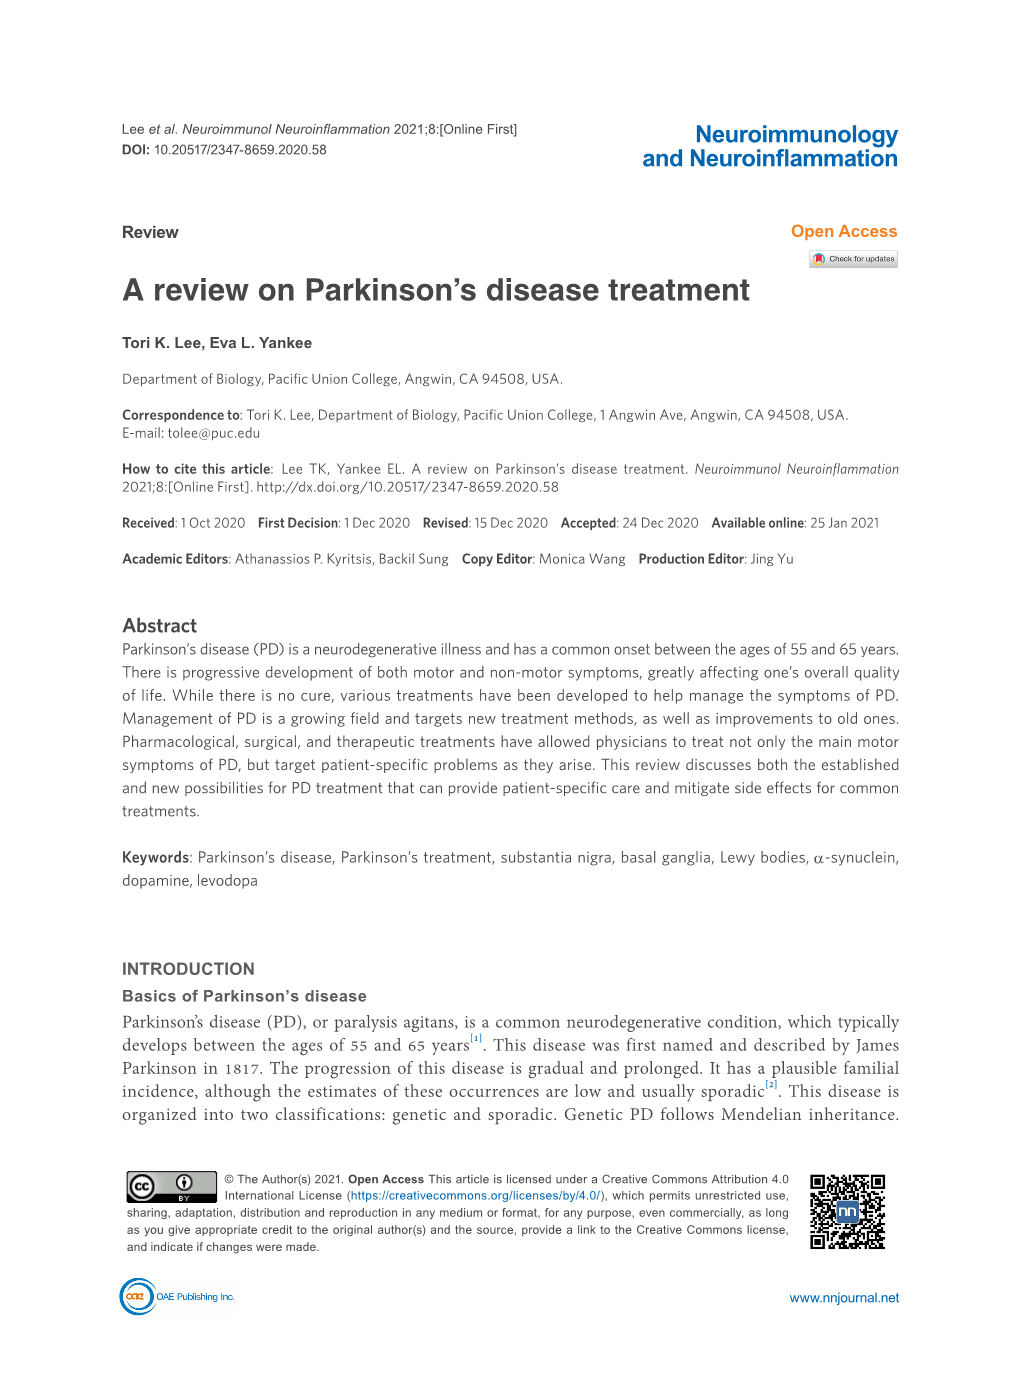 A Review on Parkinson's Disease Treatment